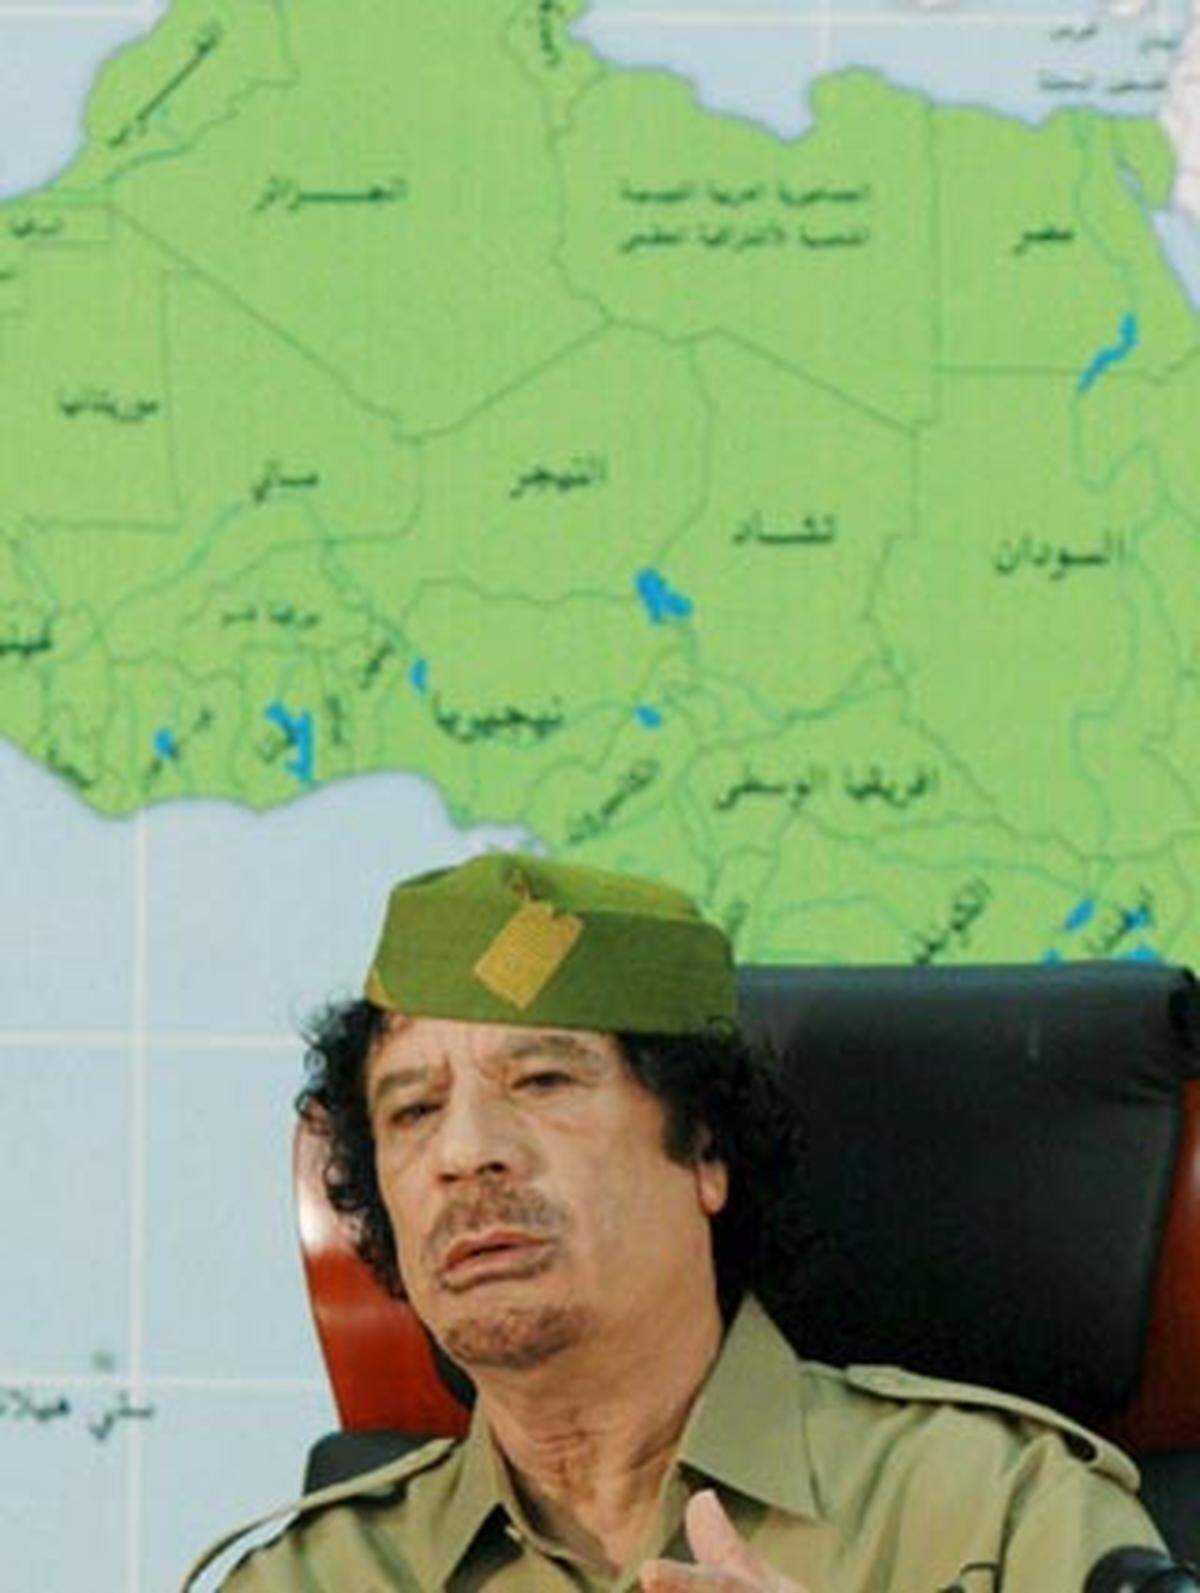 Im Jahr 2008 ließ sich Gaddafi von mehr als 200 afrikanischen Stammes-Chefs zum "König der Könige" erklären. "Wir beschließen die Anerkennung unseres verbrüderten Führers als König der Könige, der Sultane, der Fürsten, der Scheichs und der Bürgermeister von Afrika", hieß es in der Abschlusserklärung des Treffens.